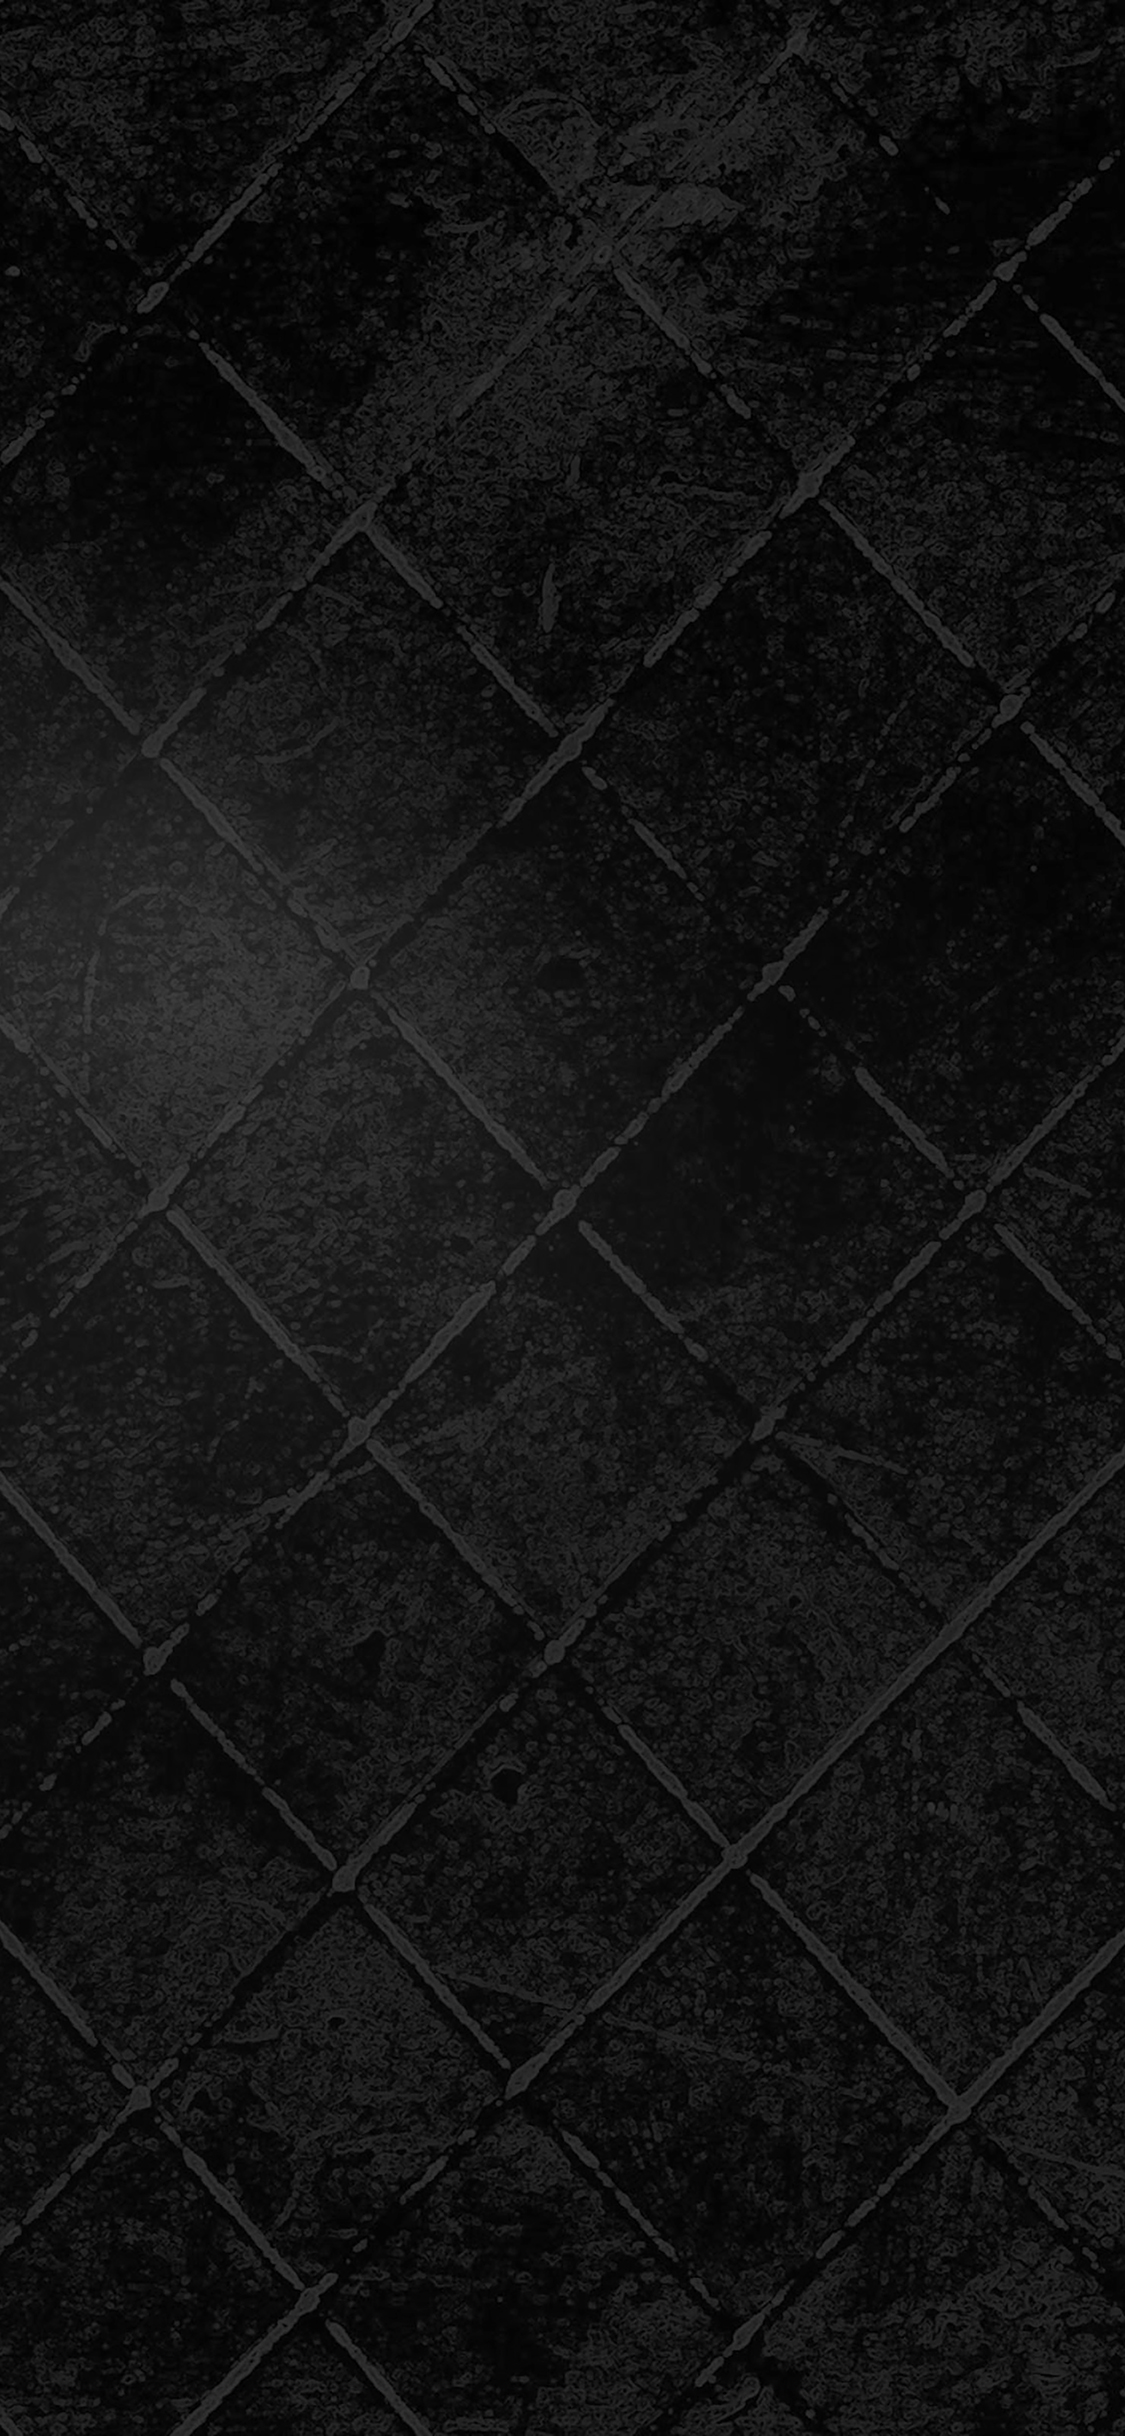 iPhone wallpaper. wallpaper dark black